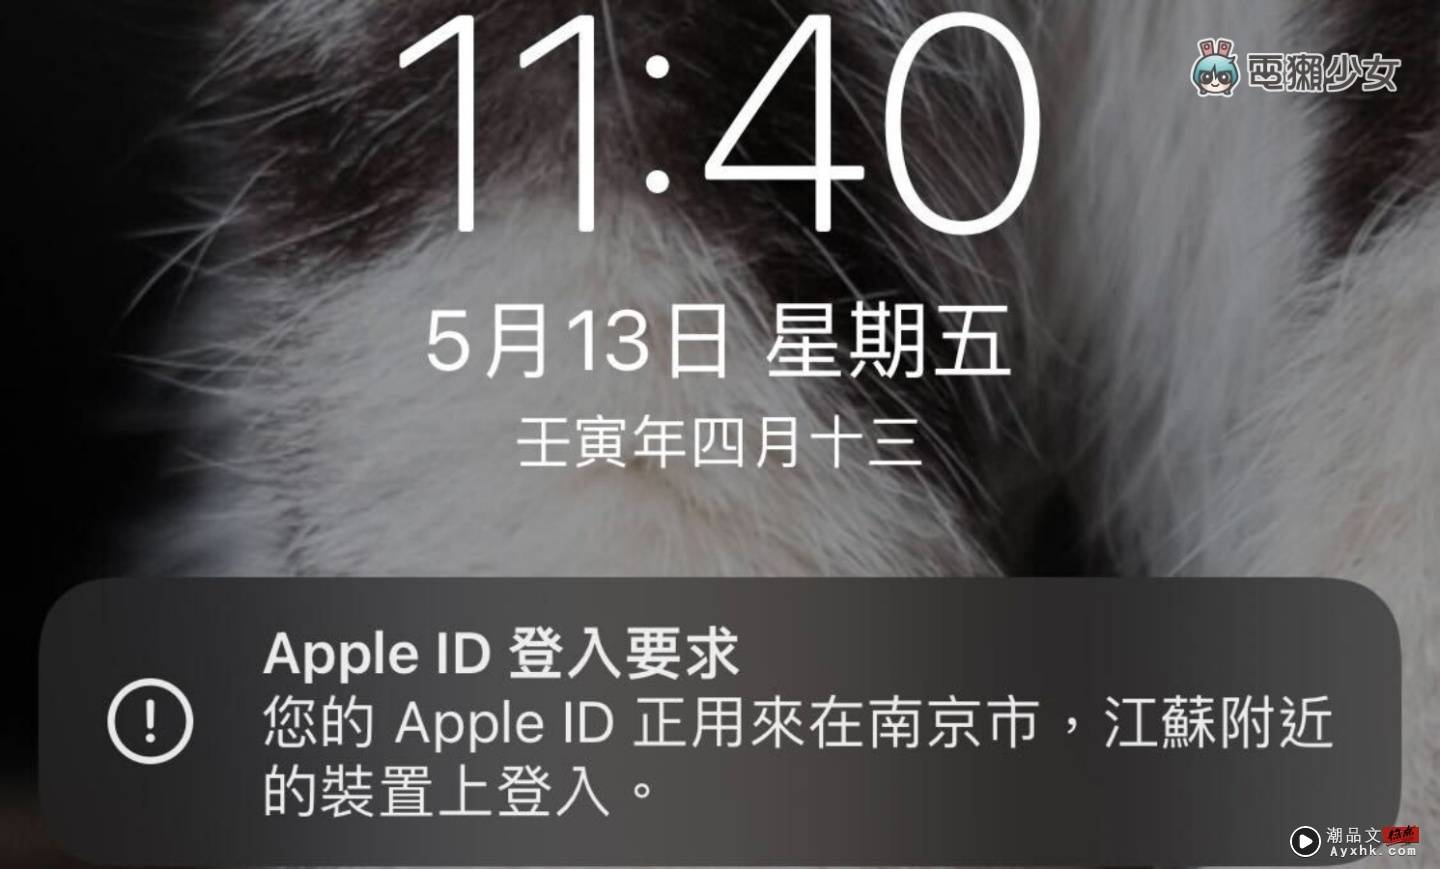 Apple ID 爆出大规模帐密外流危机！开启‘ 双重认证 ’来帐号提升安全性 数码科技 图2张